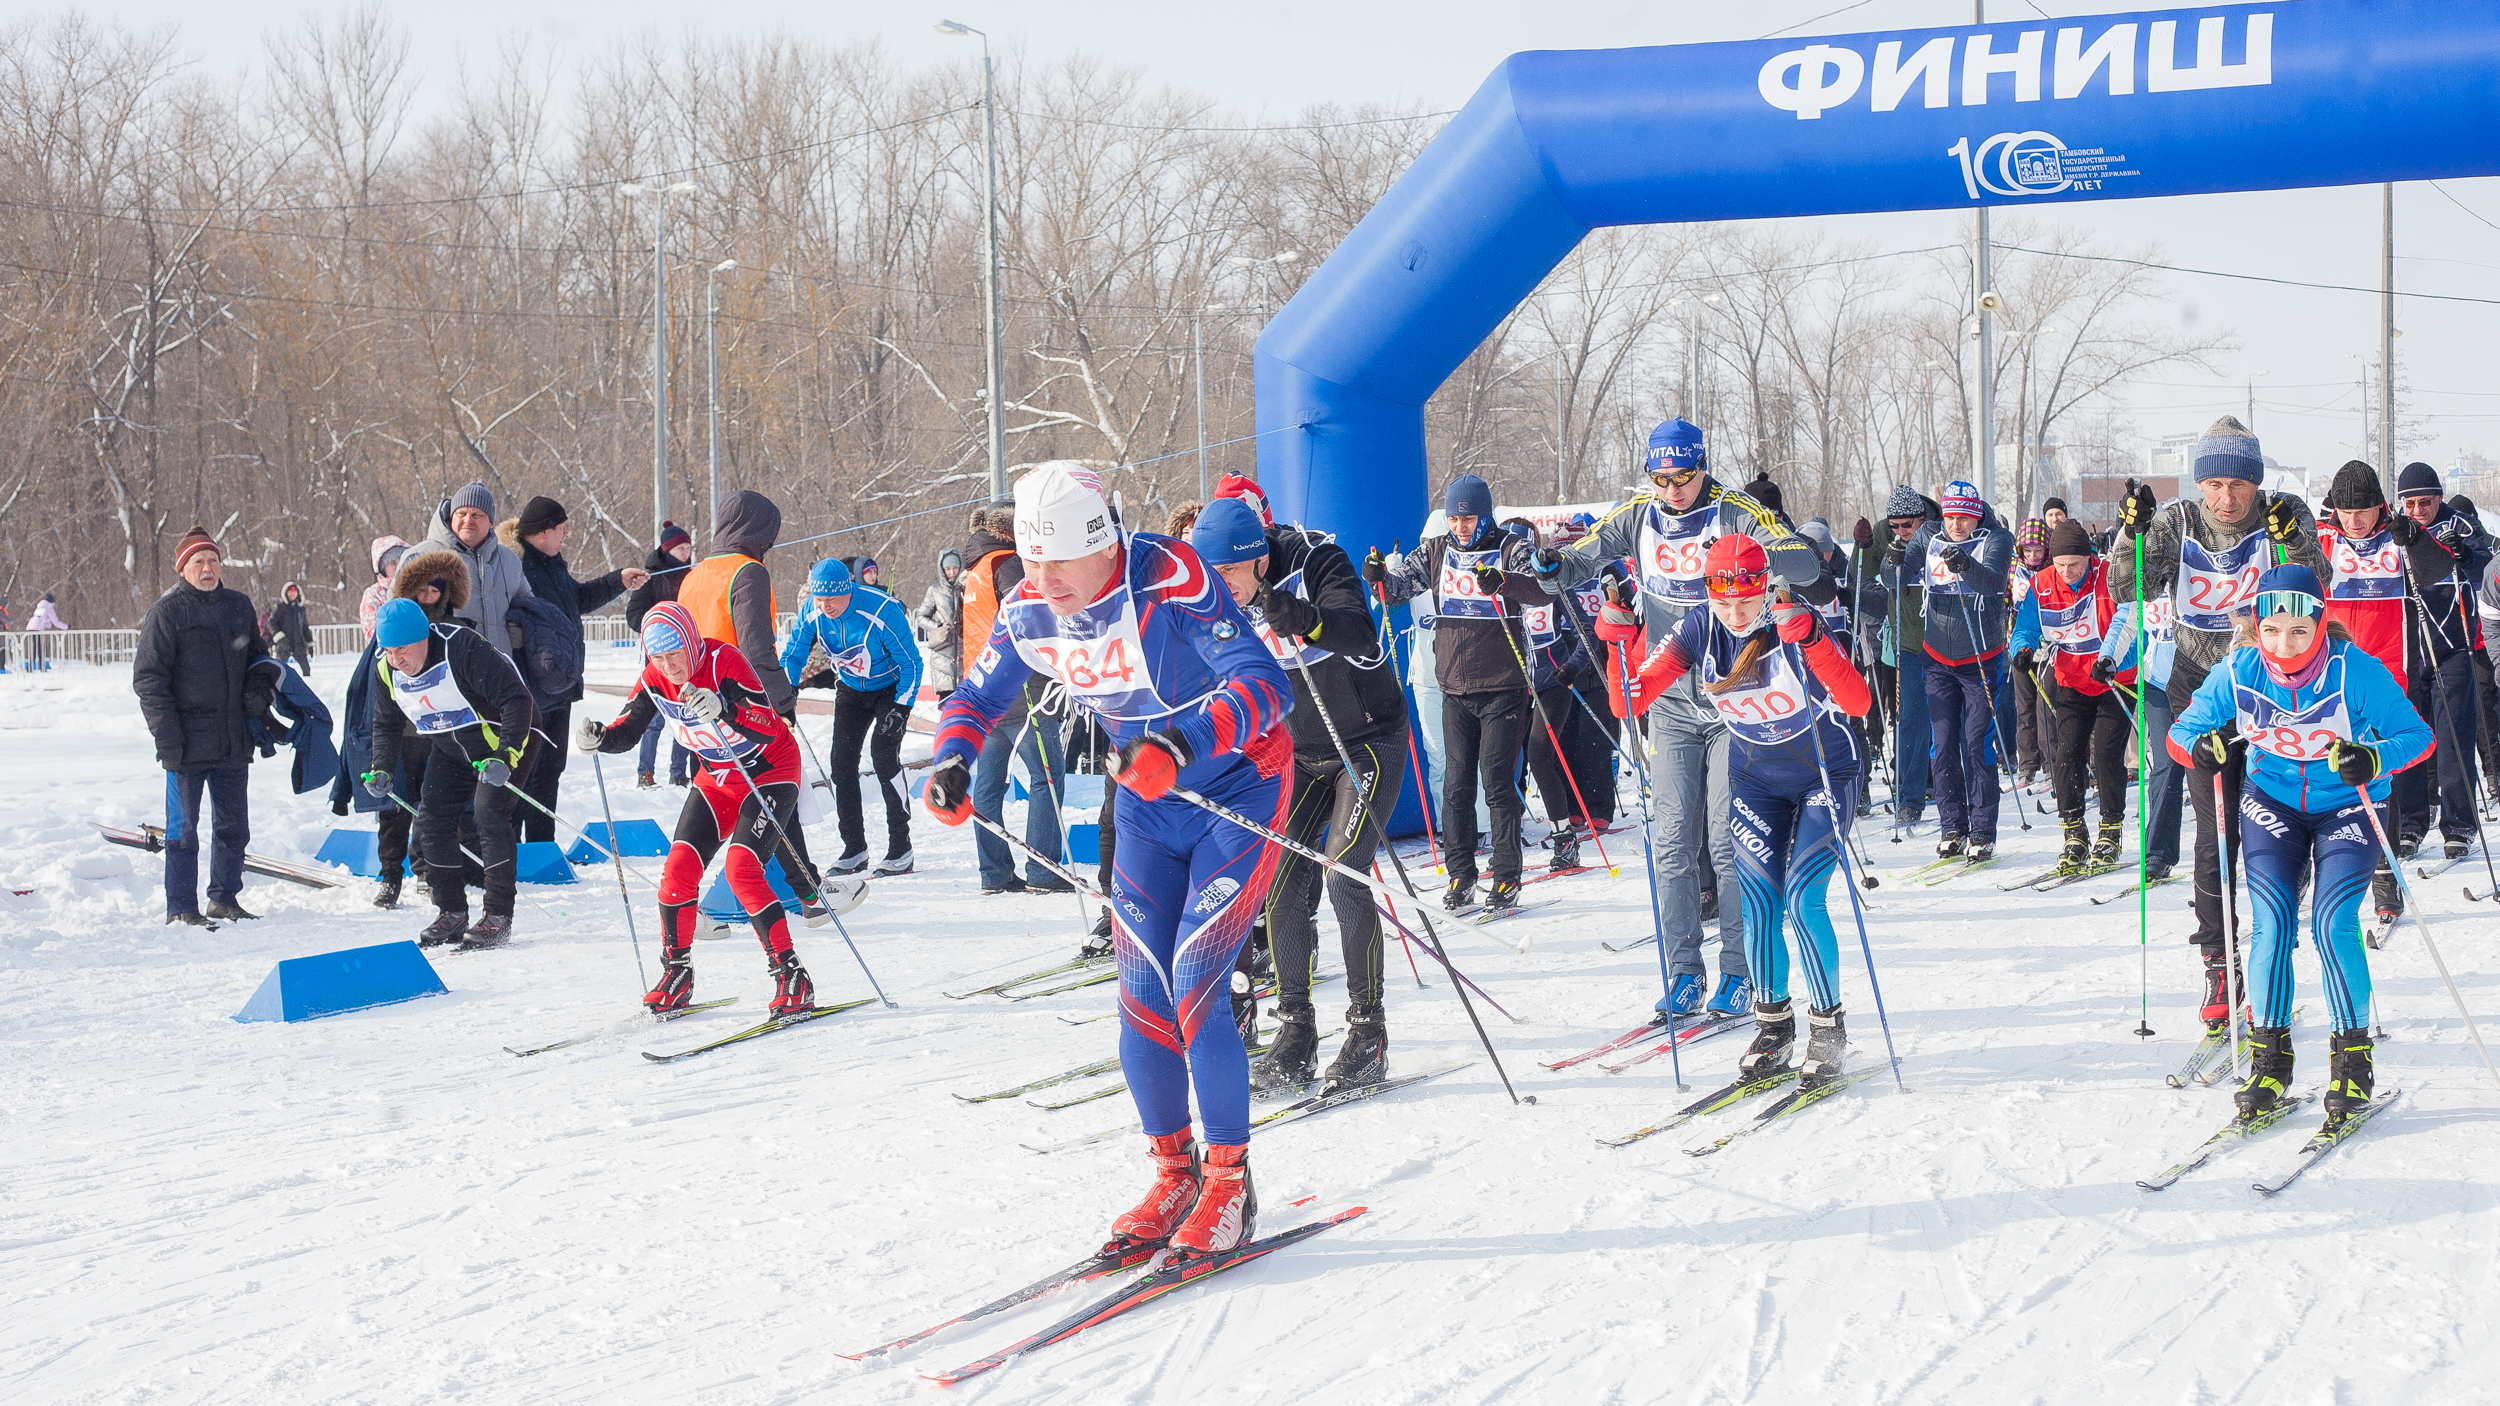 Державинская лыжня в шестой раз объединила спортсменов со всей страны фото анонса